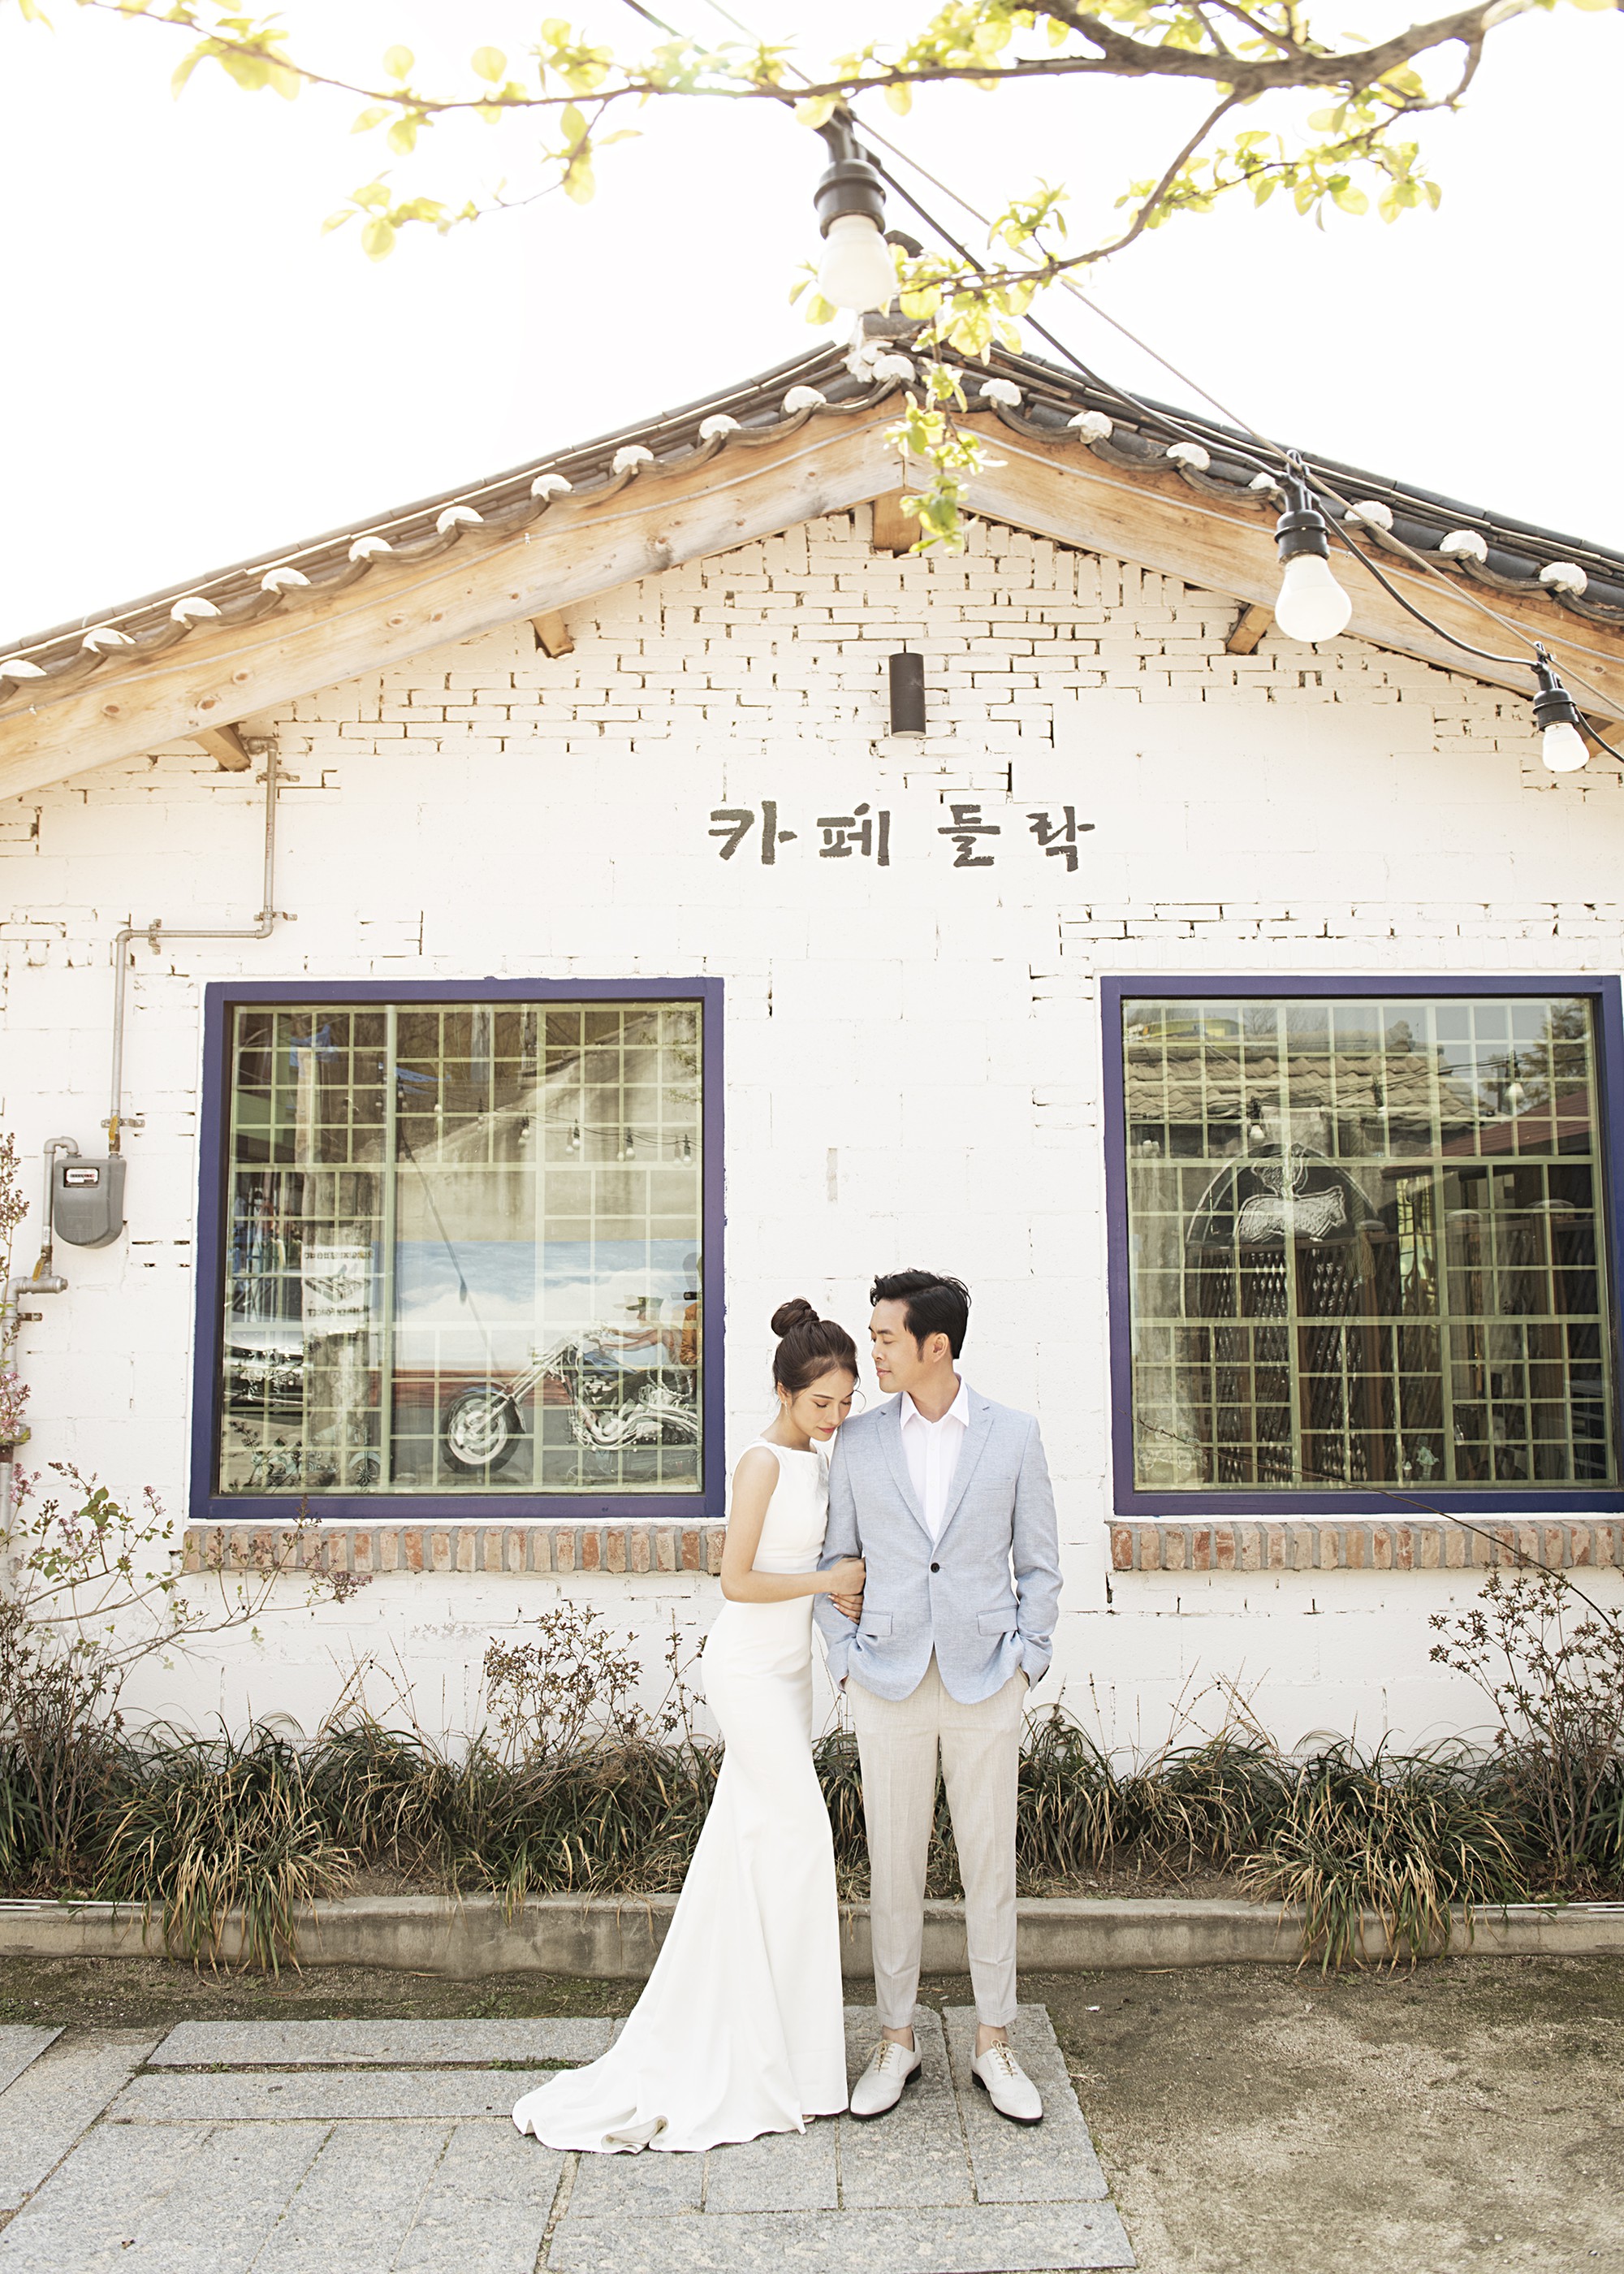 Ảnh cưới đẹp như phim chụp tại Hàn Quốc của Dương Khắc Linh và vợ trẻ kém 13 tuổi-8